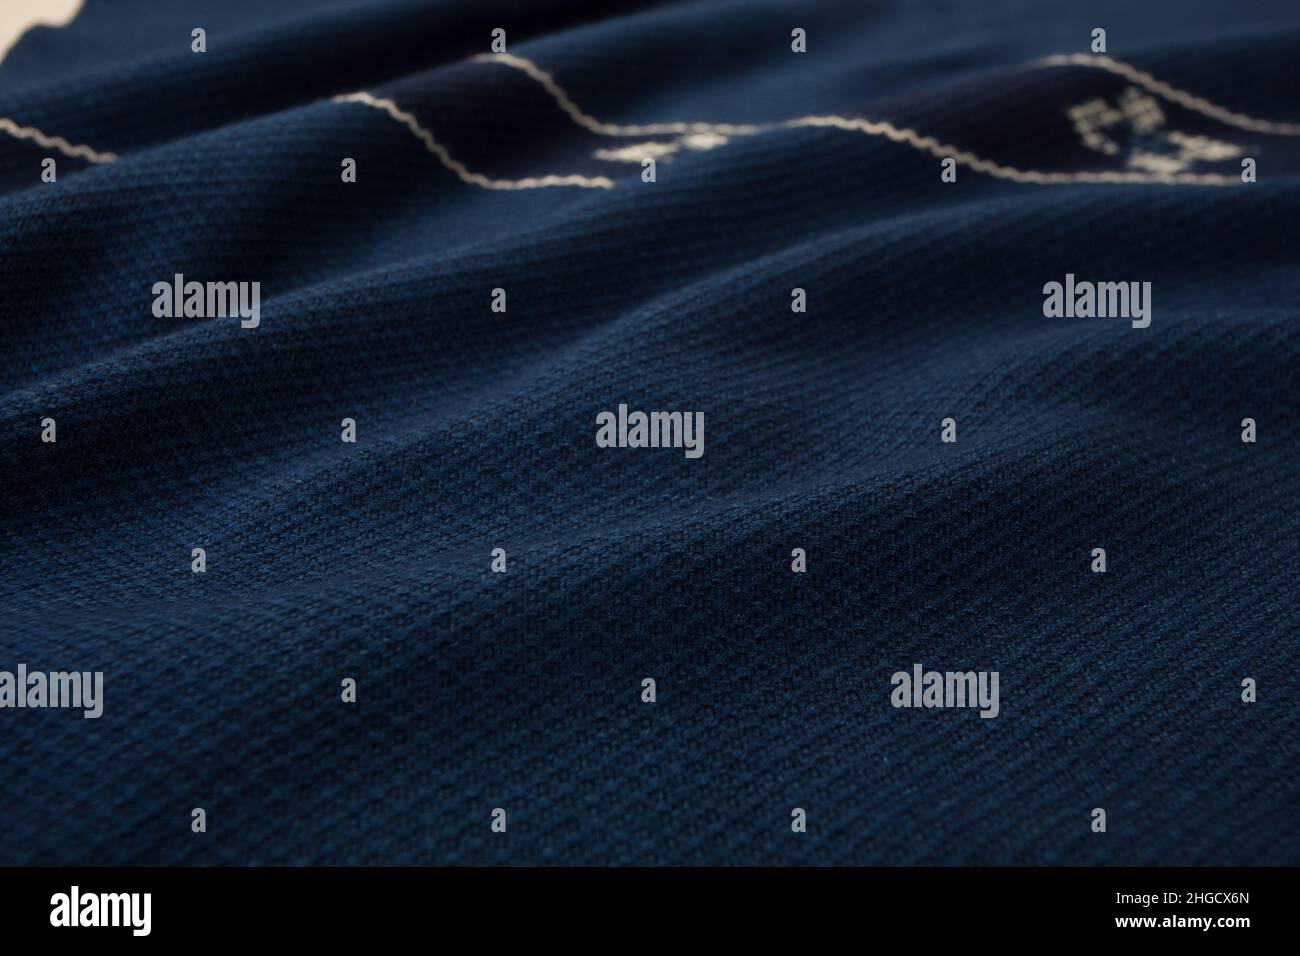 Primer plano de textura de mantón a cuadros tejido a mano, algodón tailandés teñido indigo Foto de stock